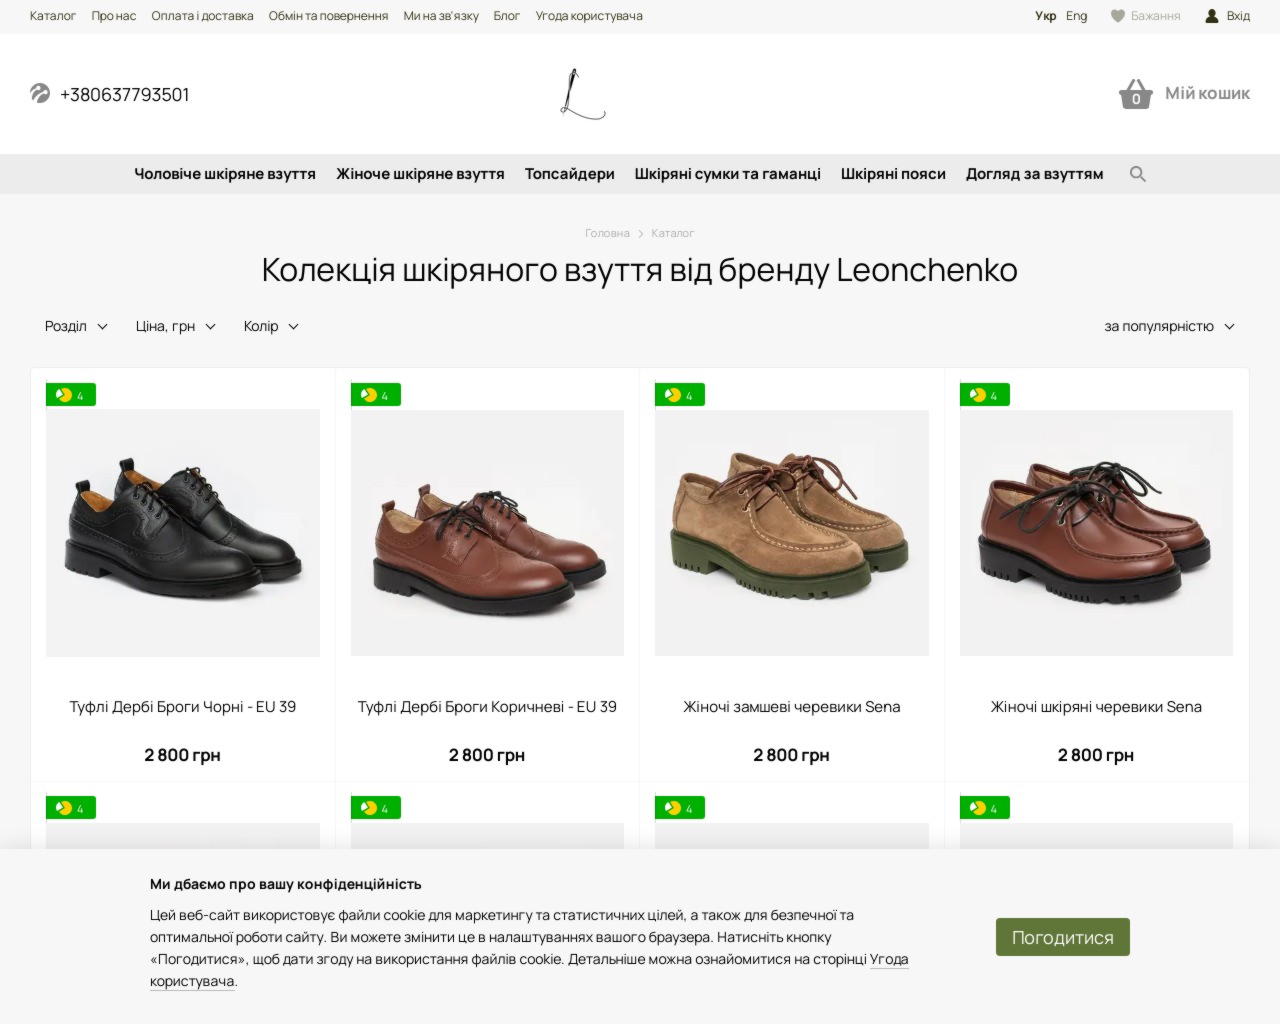 Leonchenko - крафтова майстерня з виробництва шкіряного взуття